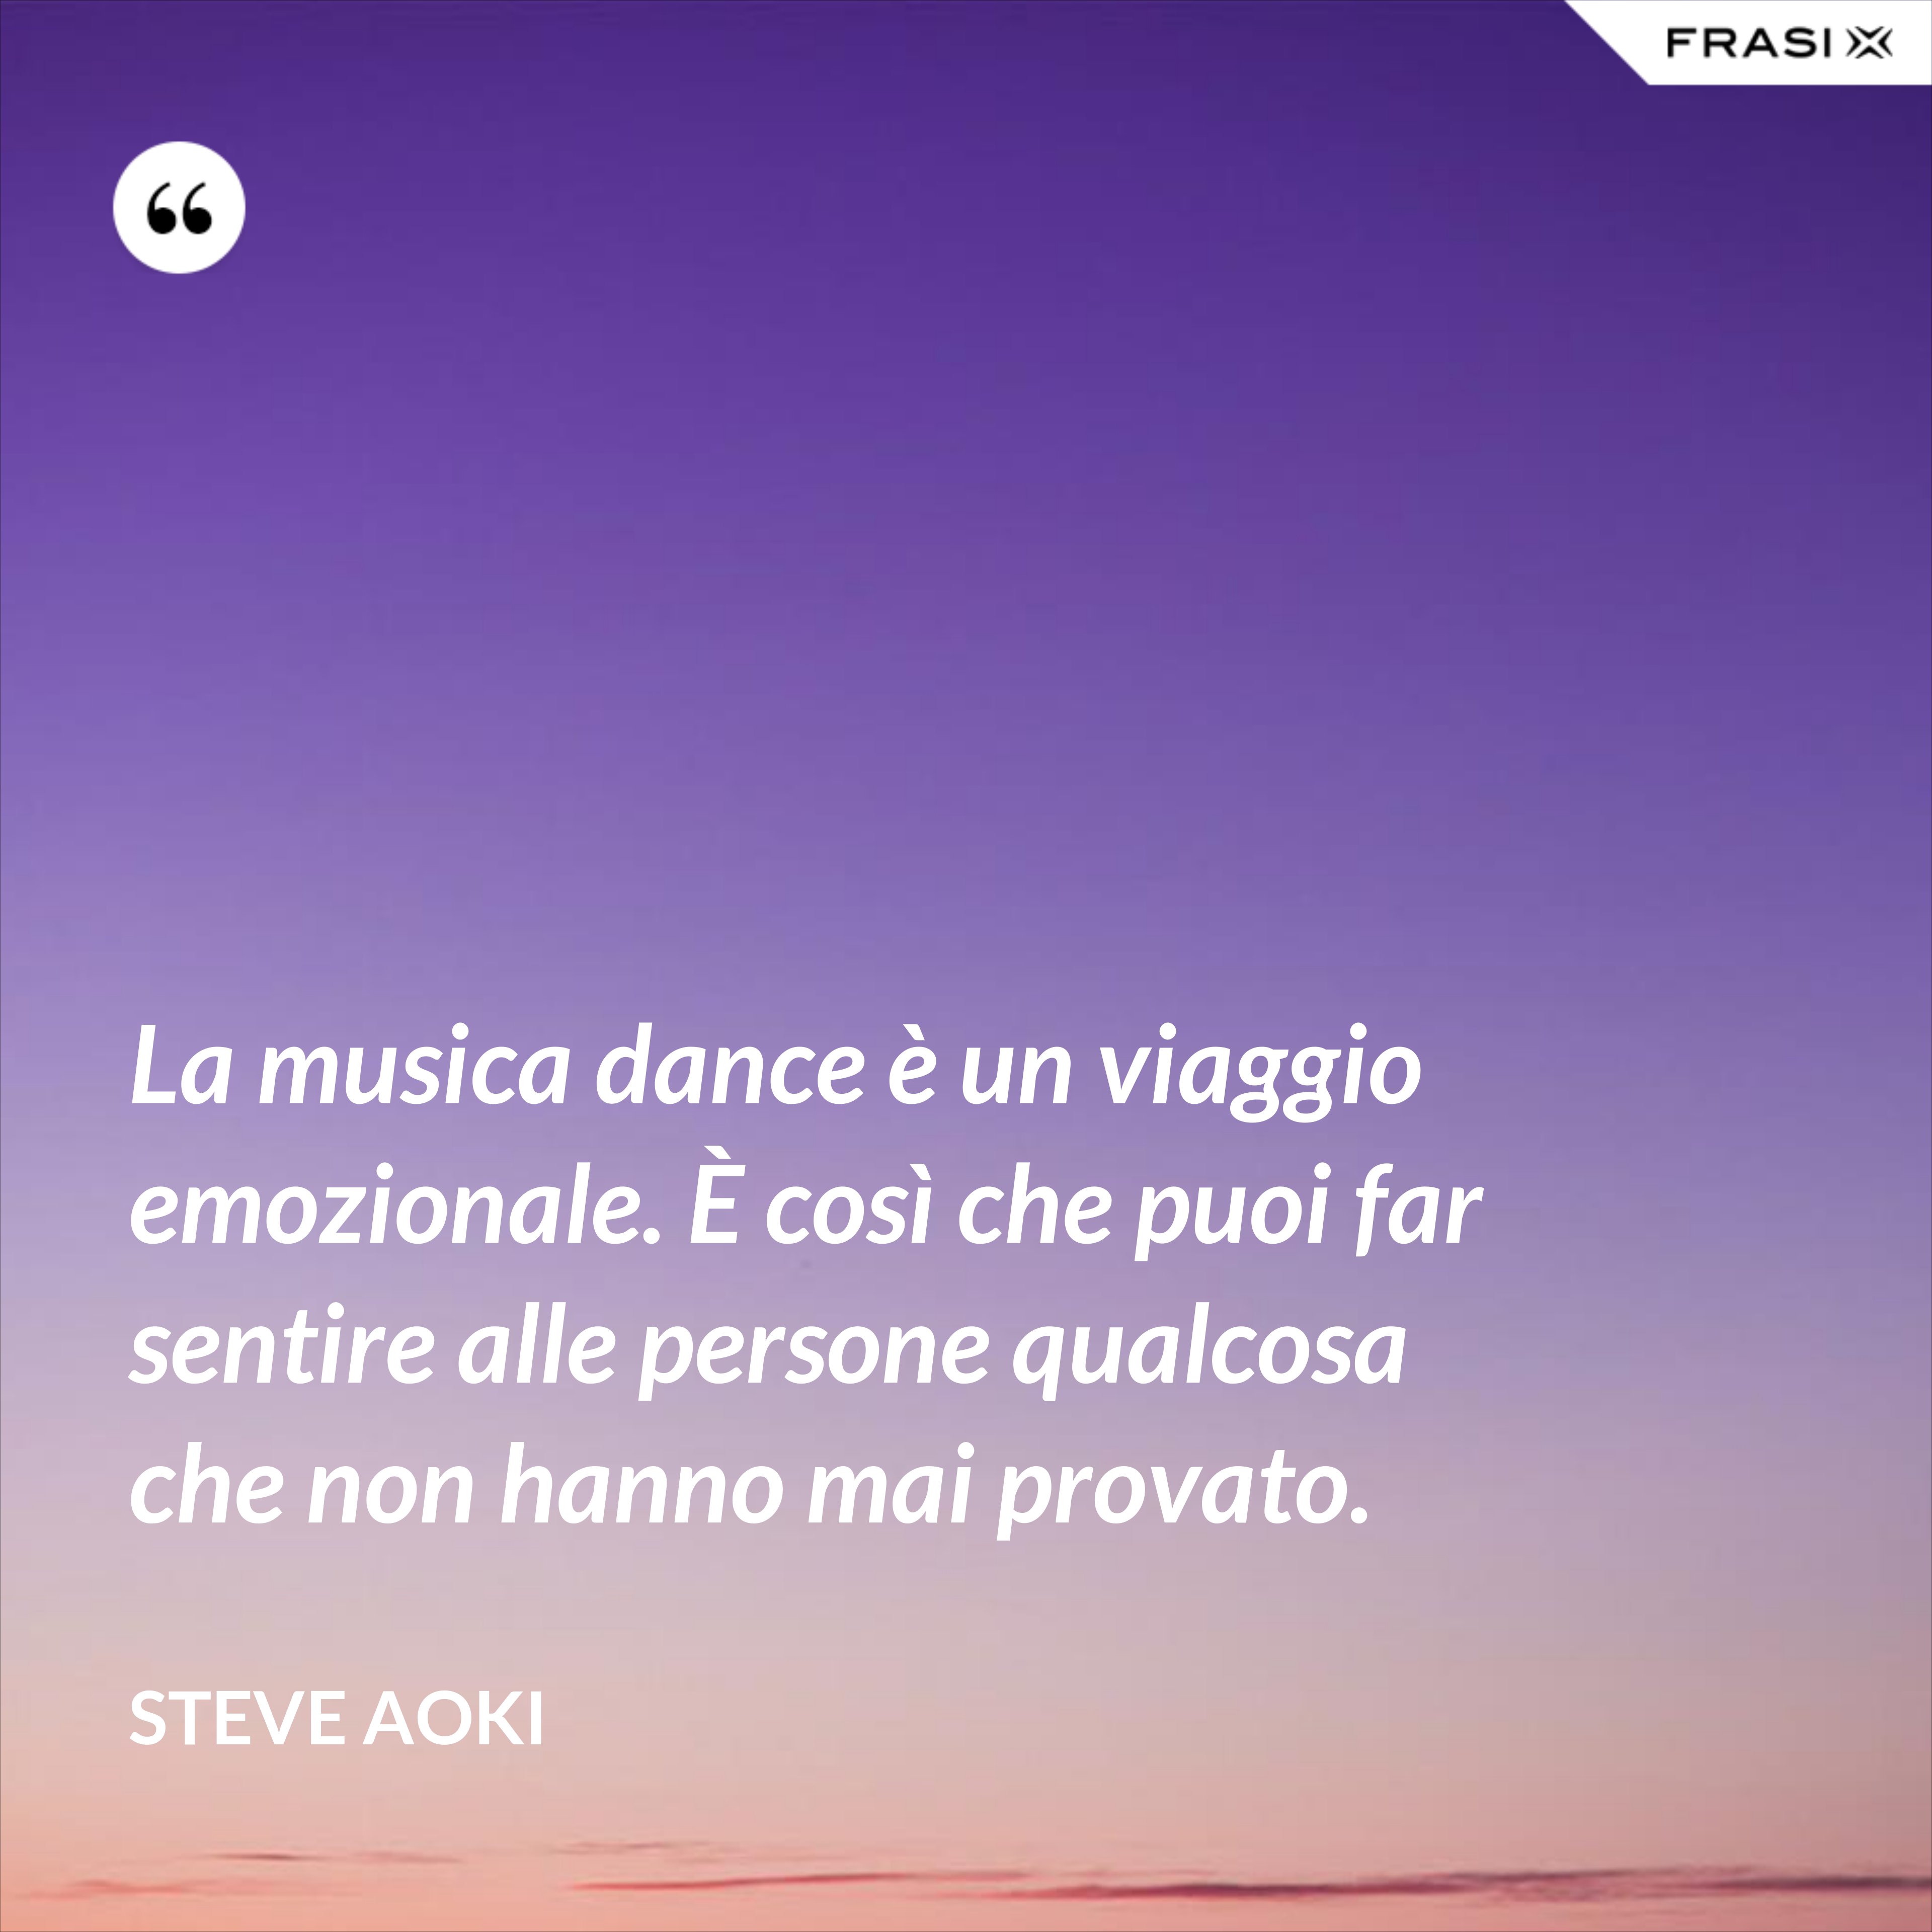 La musica dance è un viaggio emozionale. È così che puoi far sentire alle persone qualcosa che non hanno mai provato. - Steve Aoki